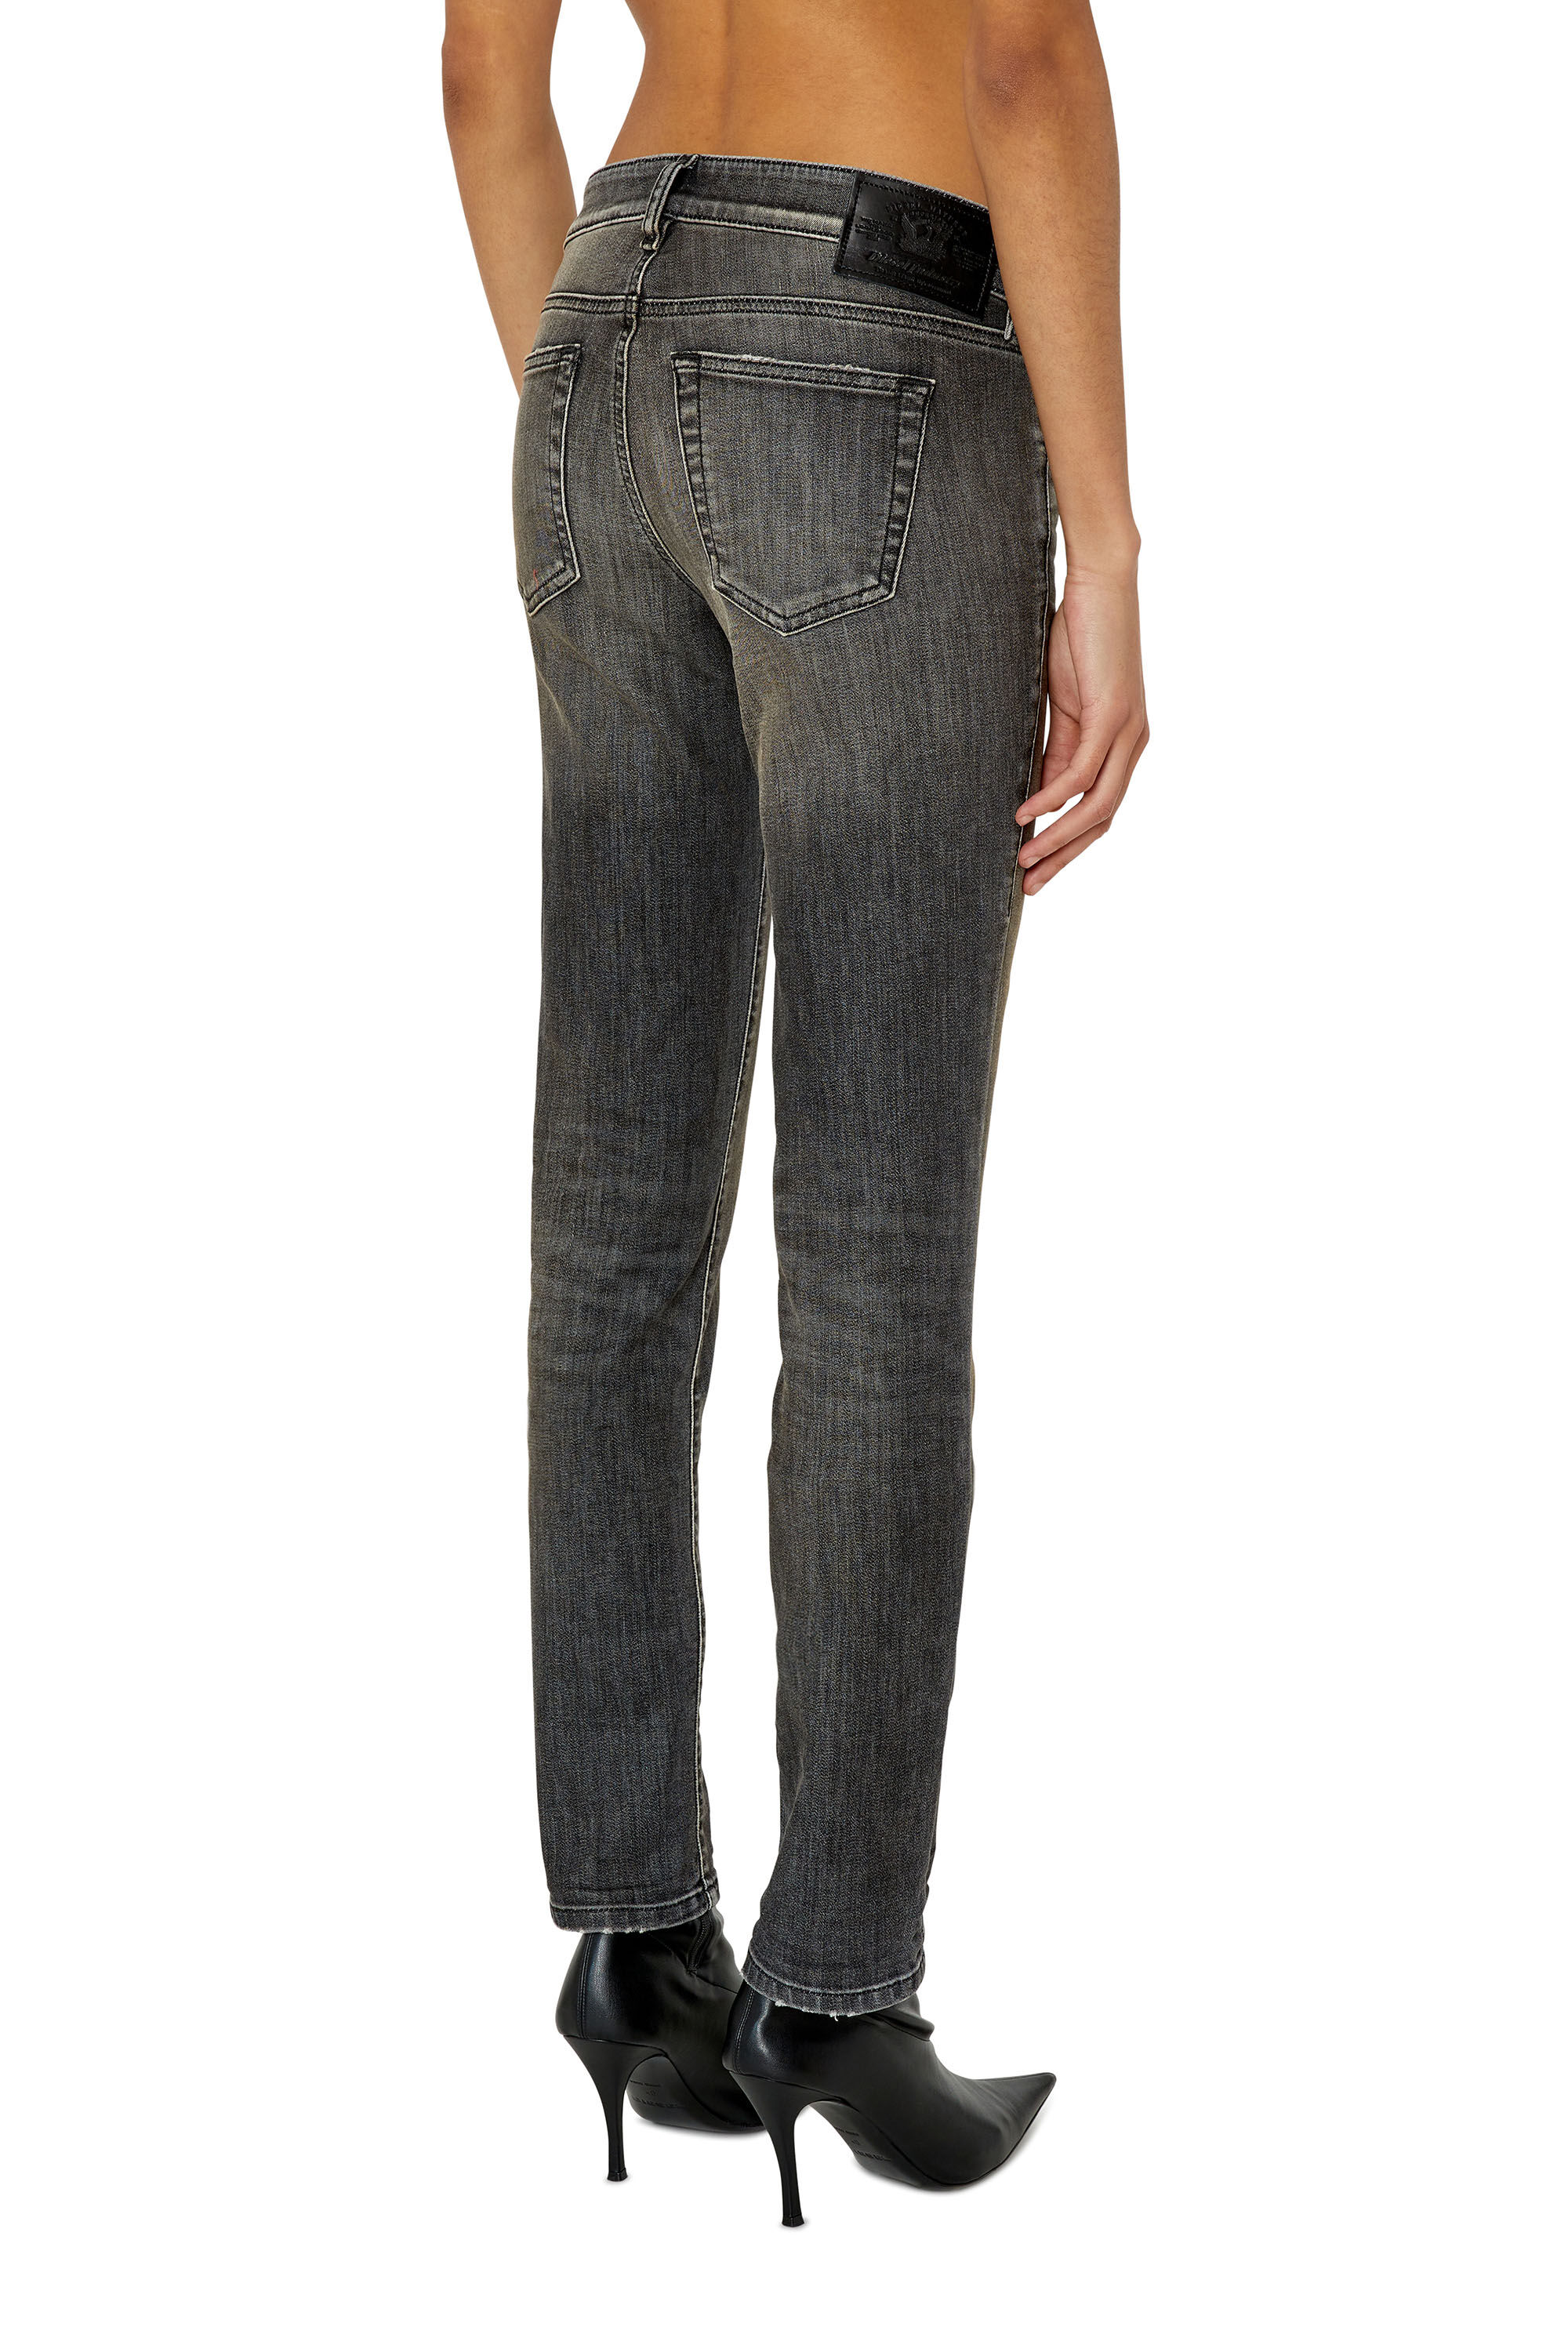 Diesel - D-Ollies JoggJeans® 09F01 Slim, Black/Dark grey - Image 4